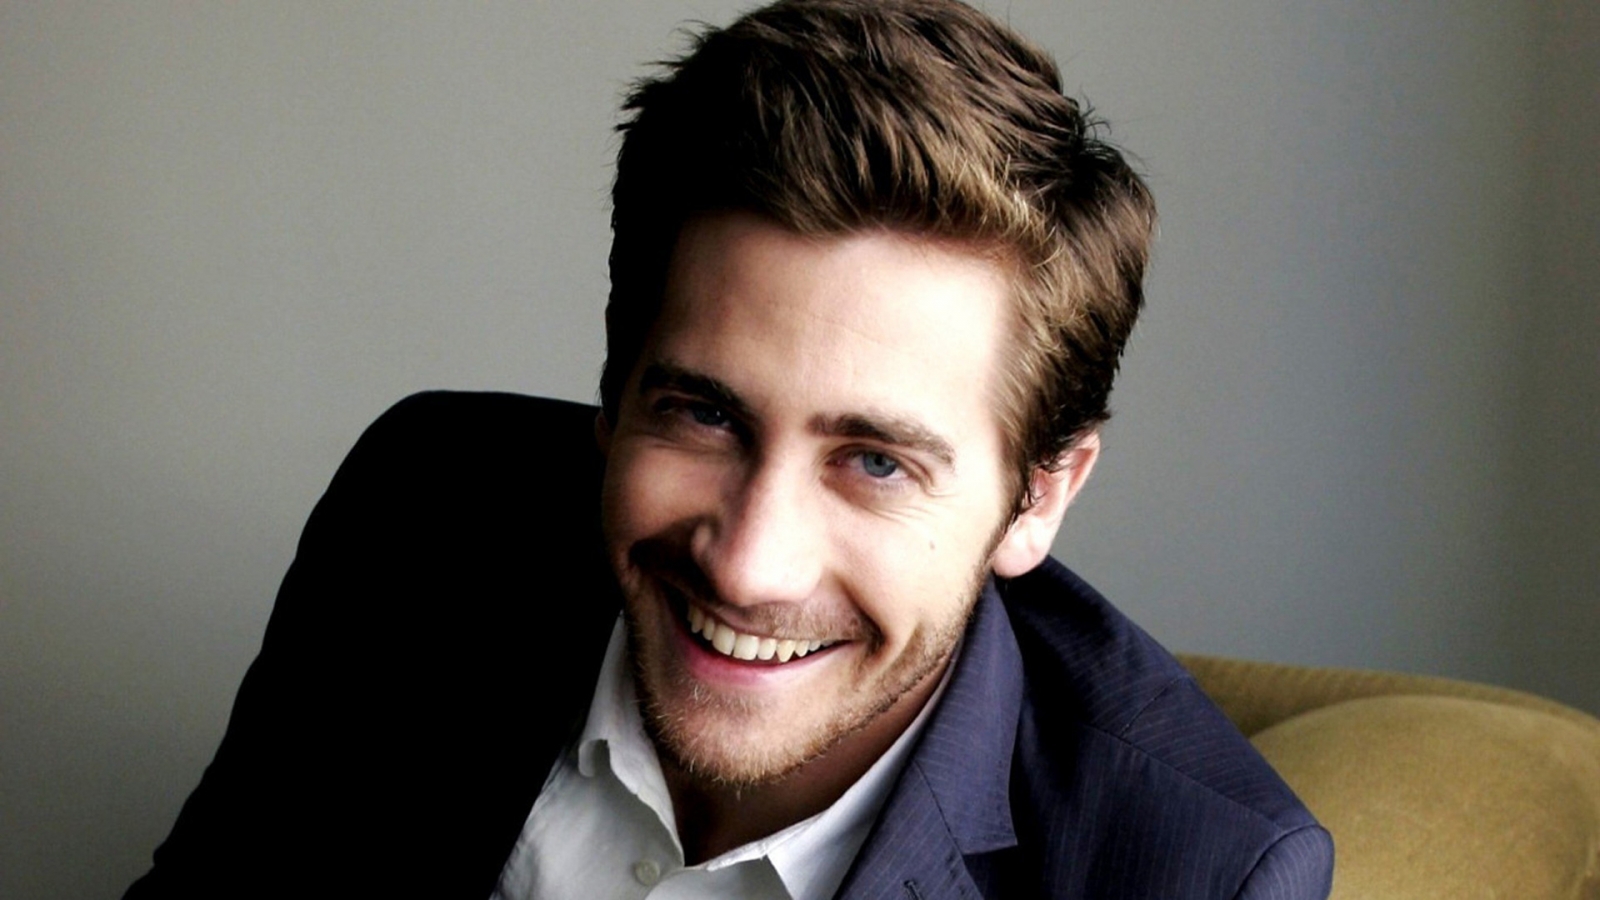 Jake Gyllenhaal Smile for 1600 x 900 HDTV resolution